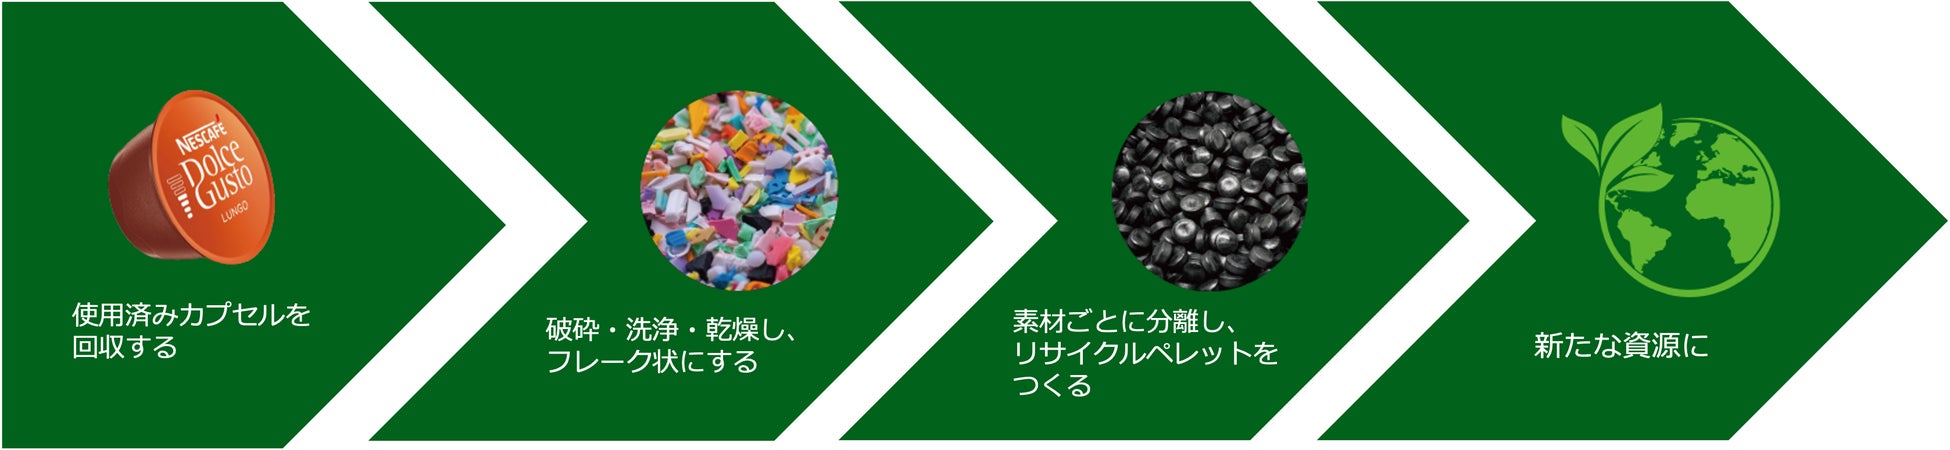 サーキュラーエコノミー構築に向けた取り組みとして「ネスカフェ ドルチェ グスト」の使用済みカプセルの回収を神奈川県内のイトーヨーカドー7店舗で開始のサブ画像4